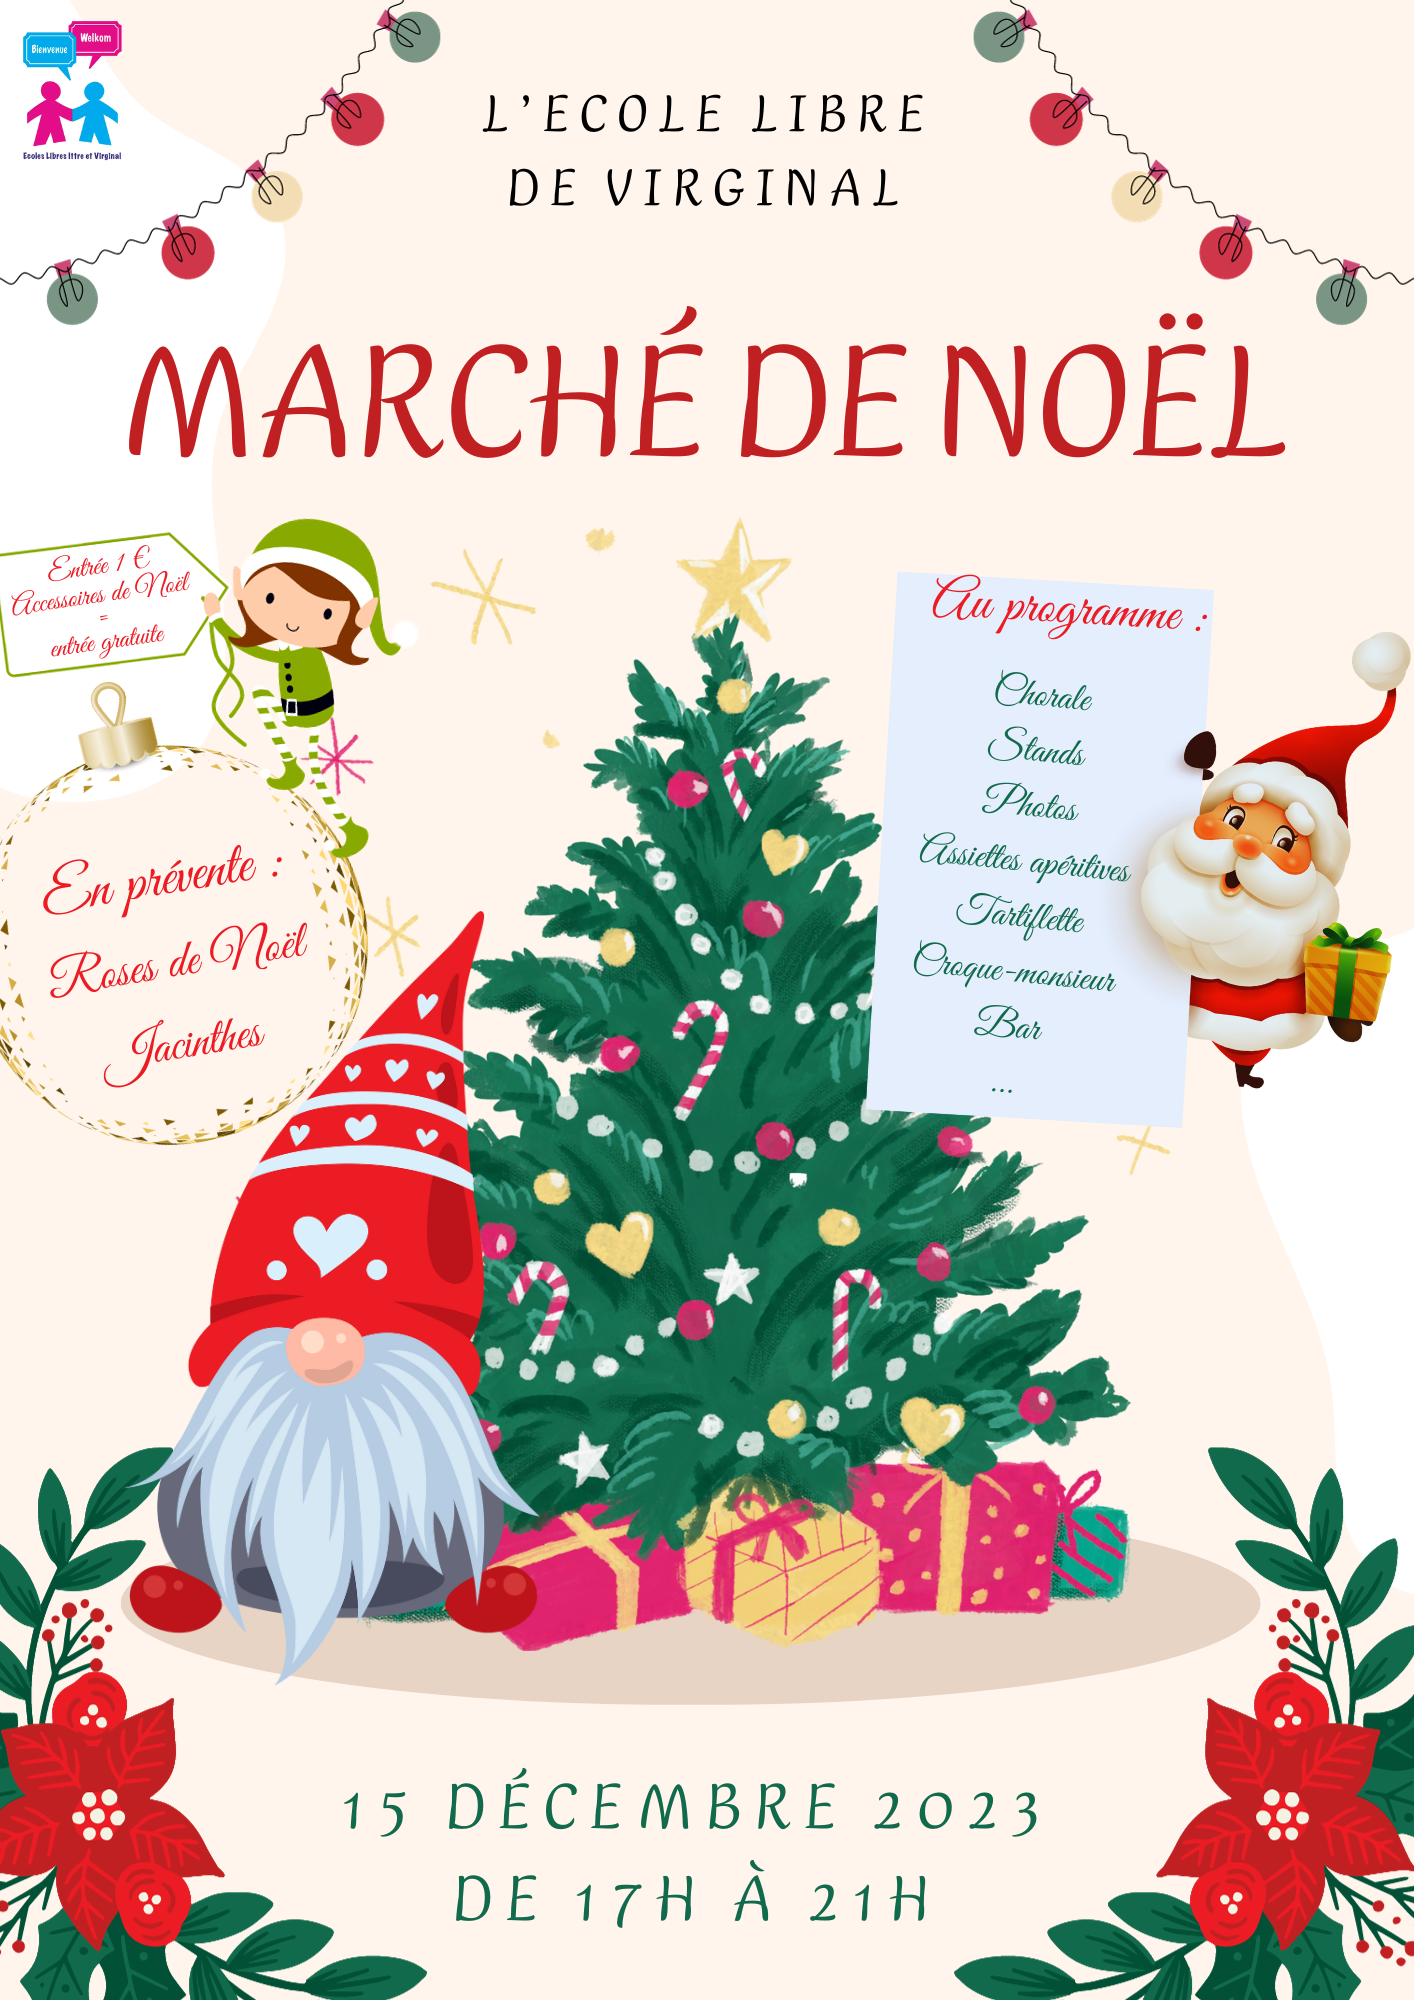 Distribution de colis de Noël — Commune d'Ittre